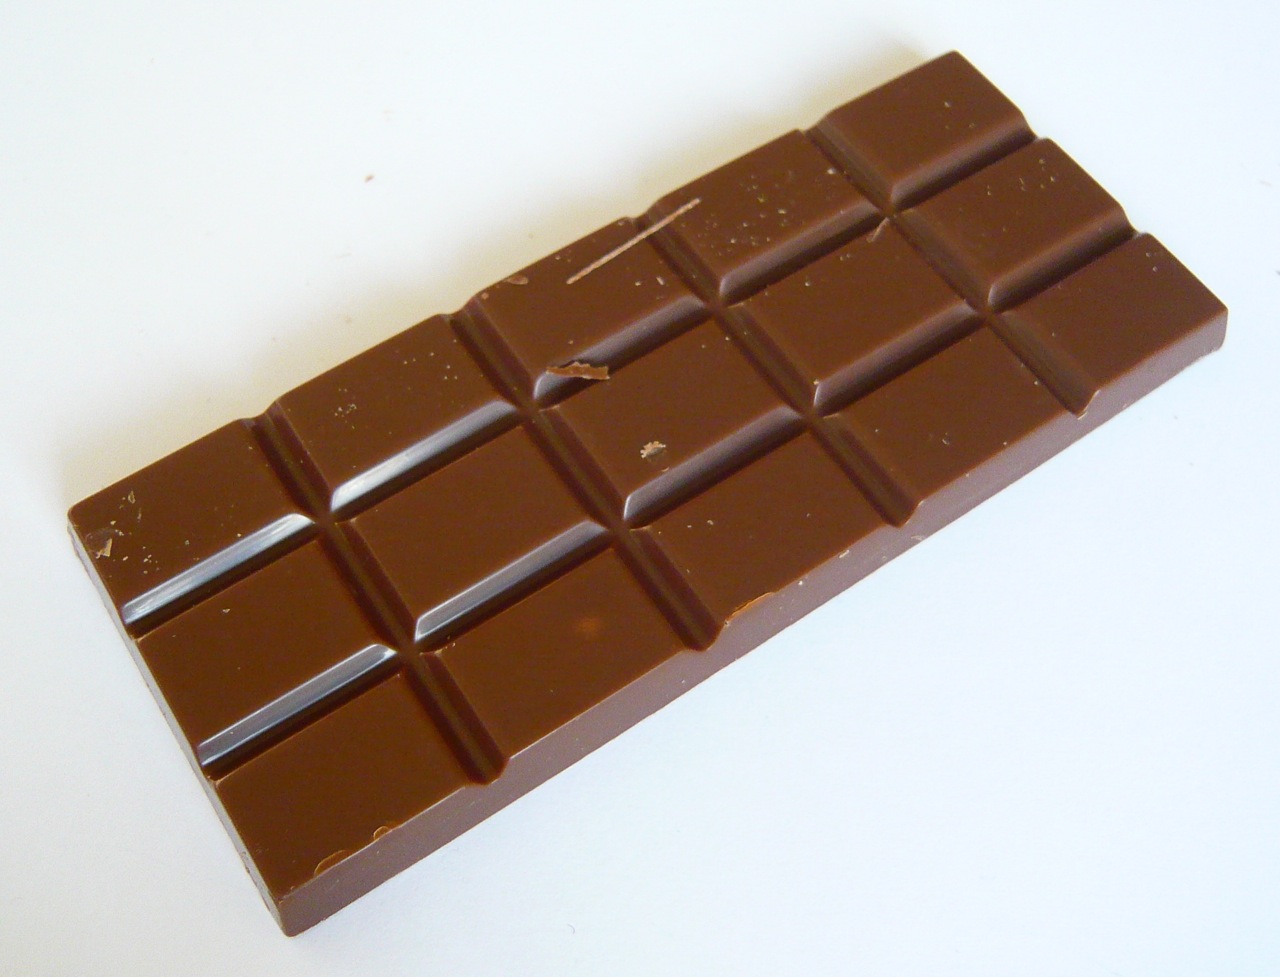 http://www.chocablog.com/wp-content/uploads/2008/12/ryelands-chocolate-3.jpg